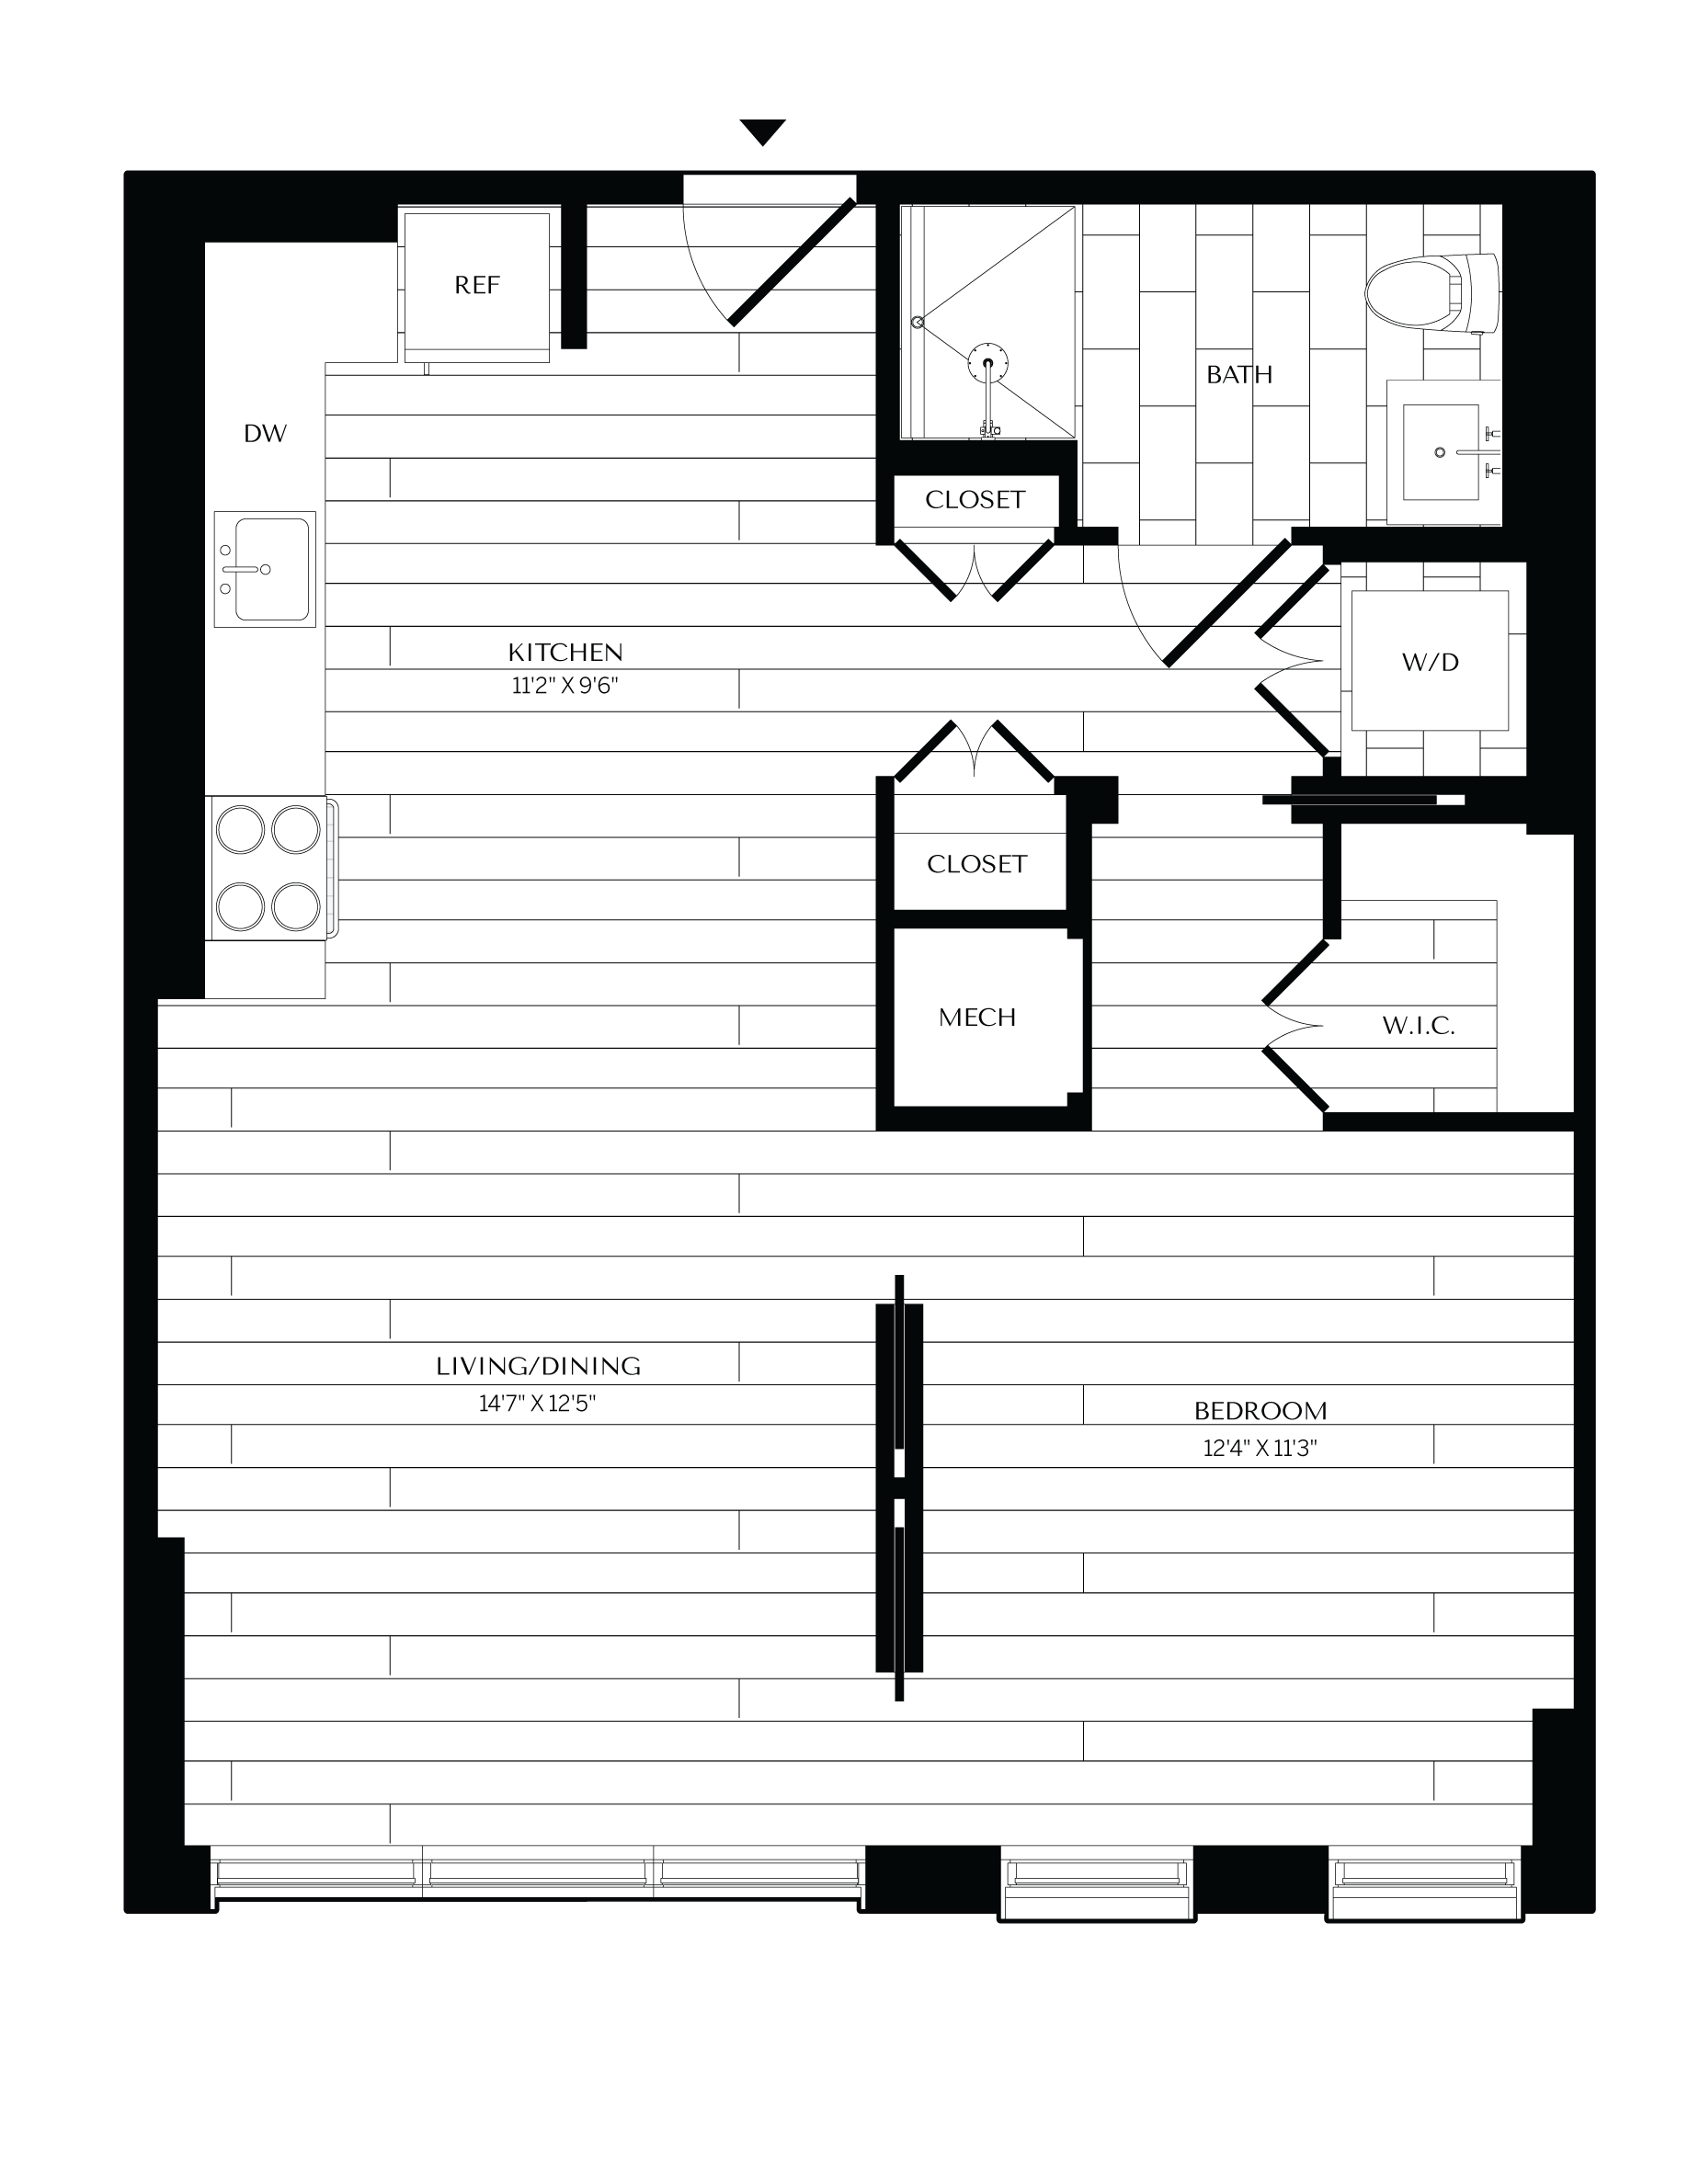 Floorplan image of unit 1112